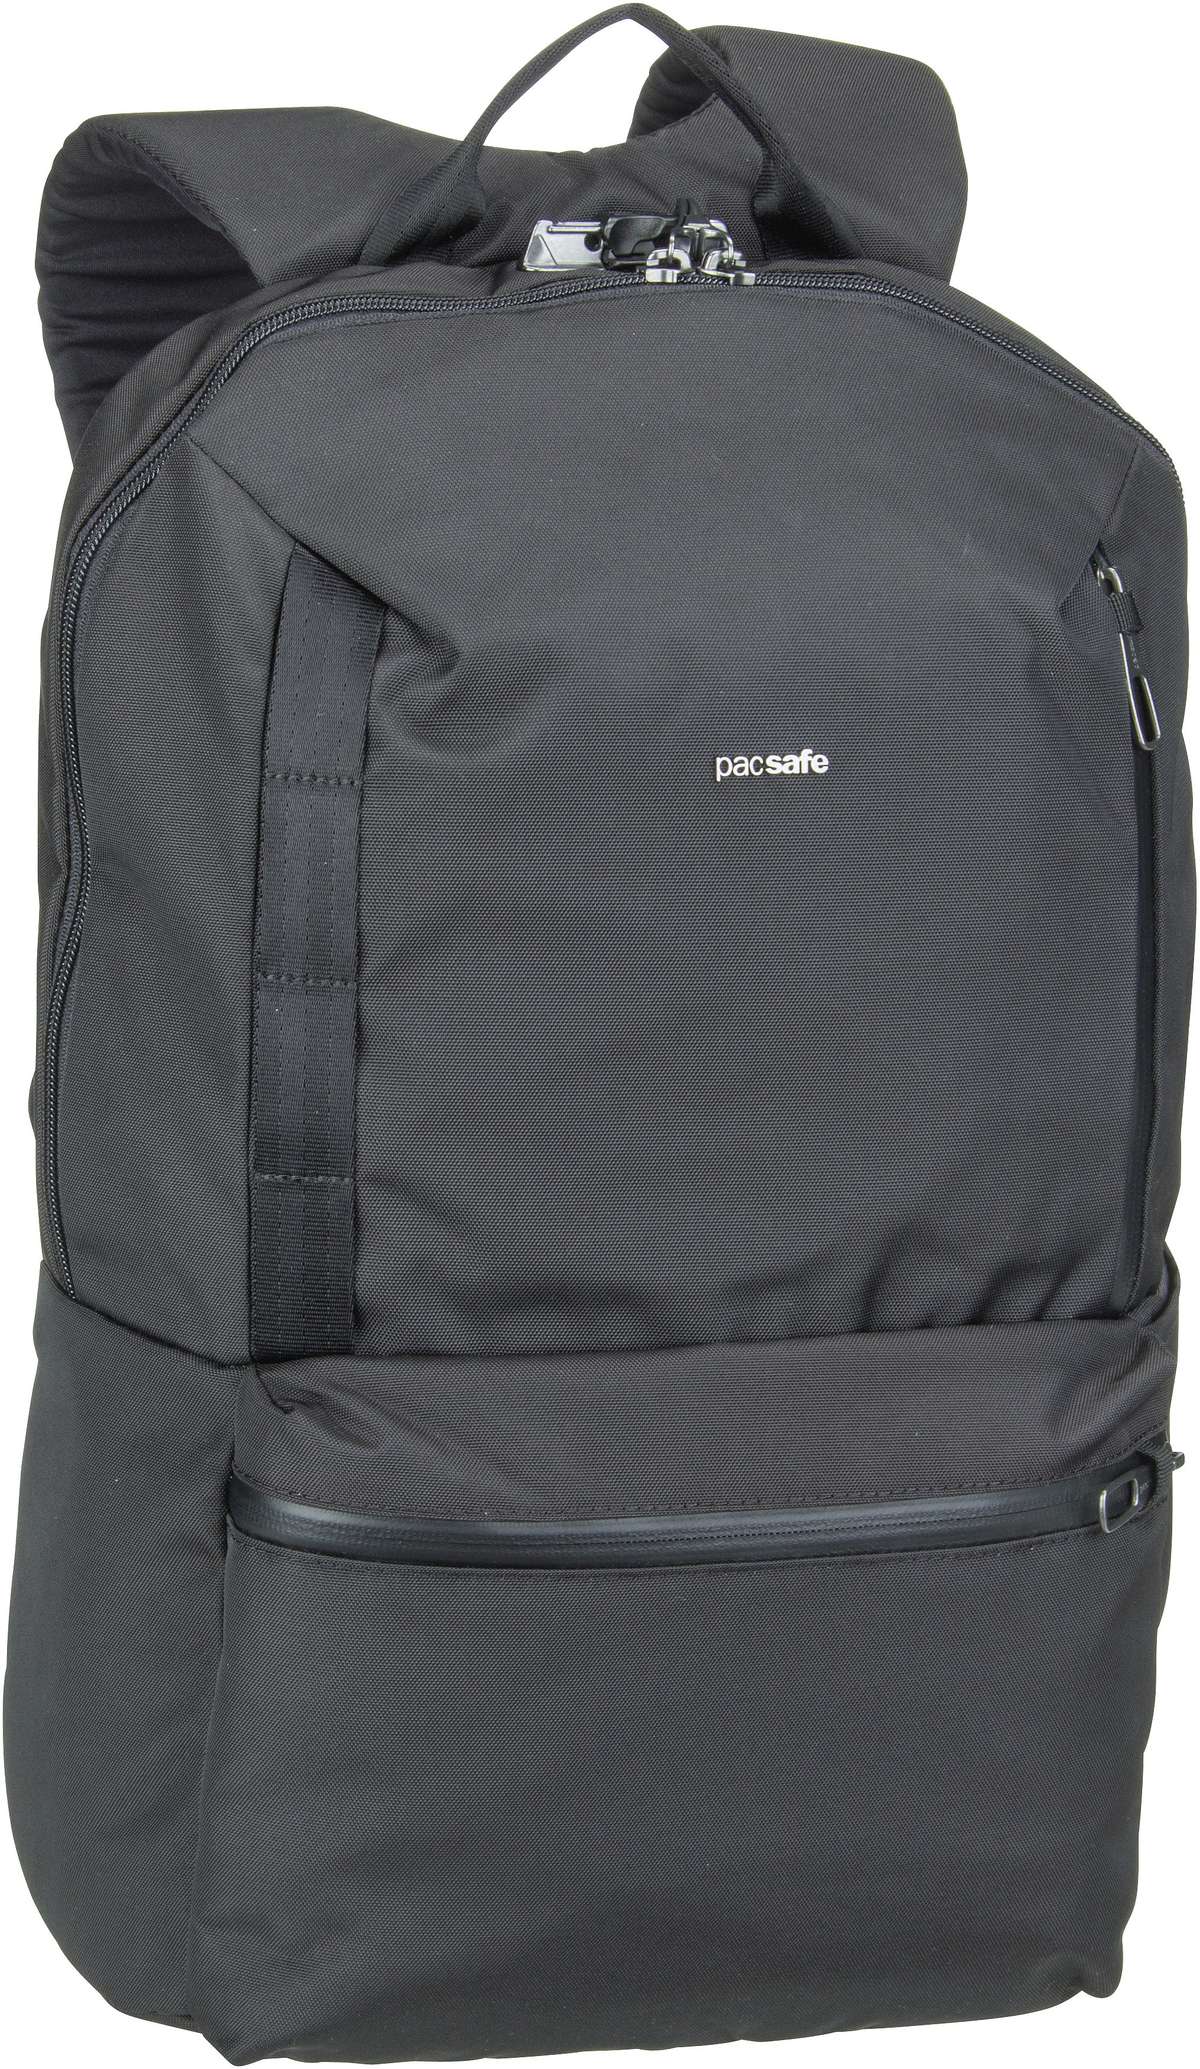 Pacsafe Pacsafe Metrosafe X 20L Backpack in Schwarz (20 Liter), Rucksack / Backpack